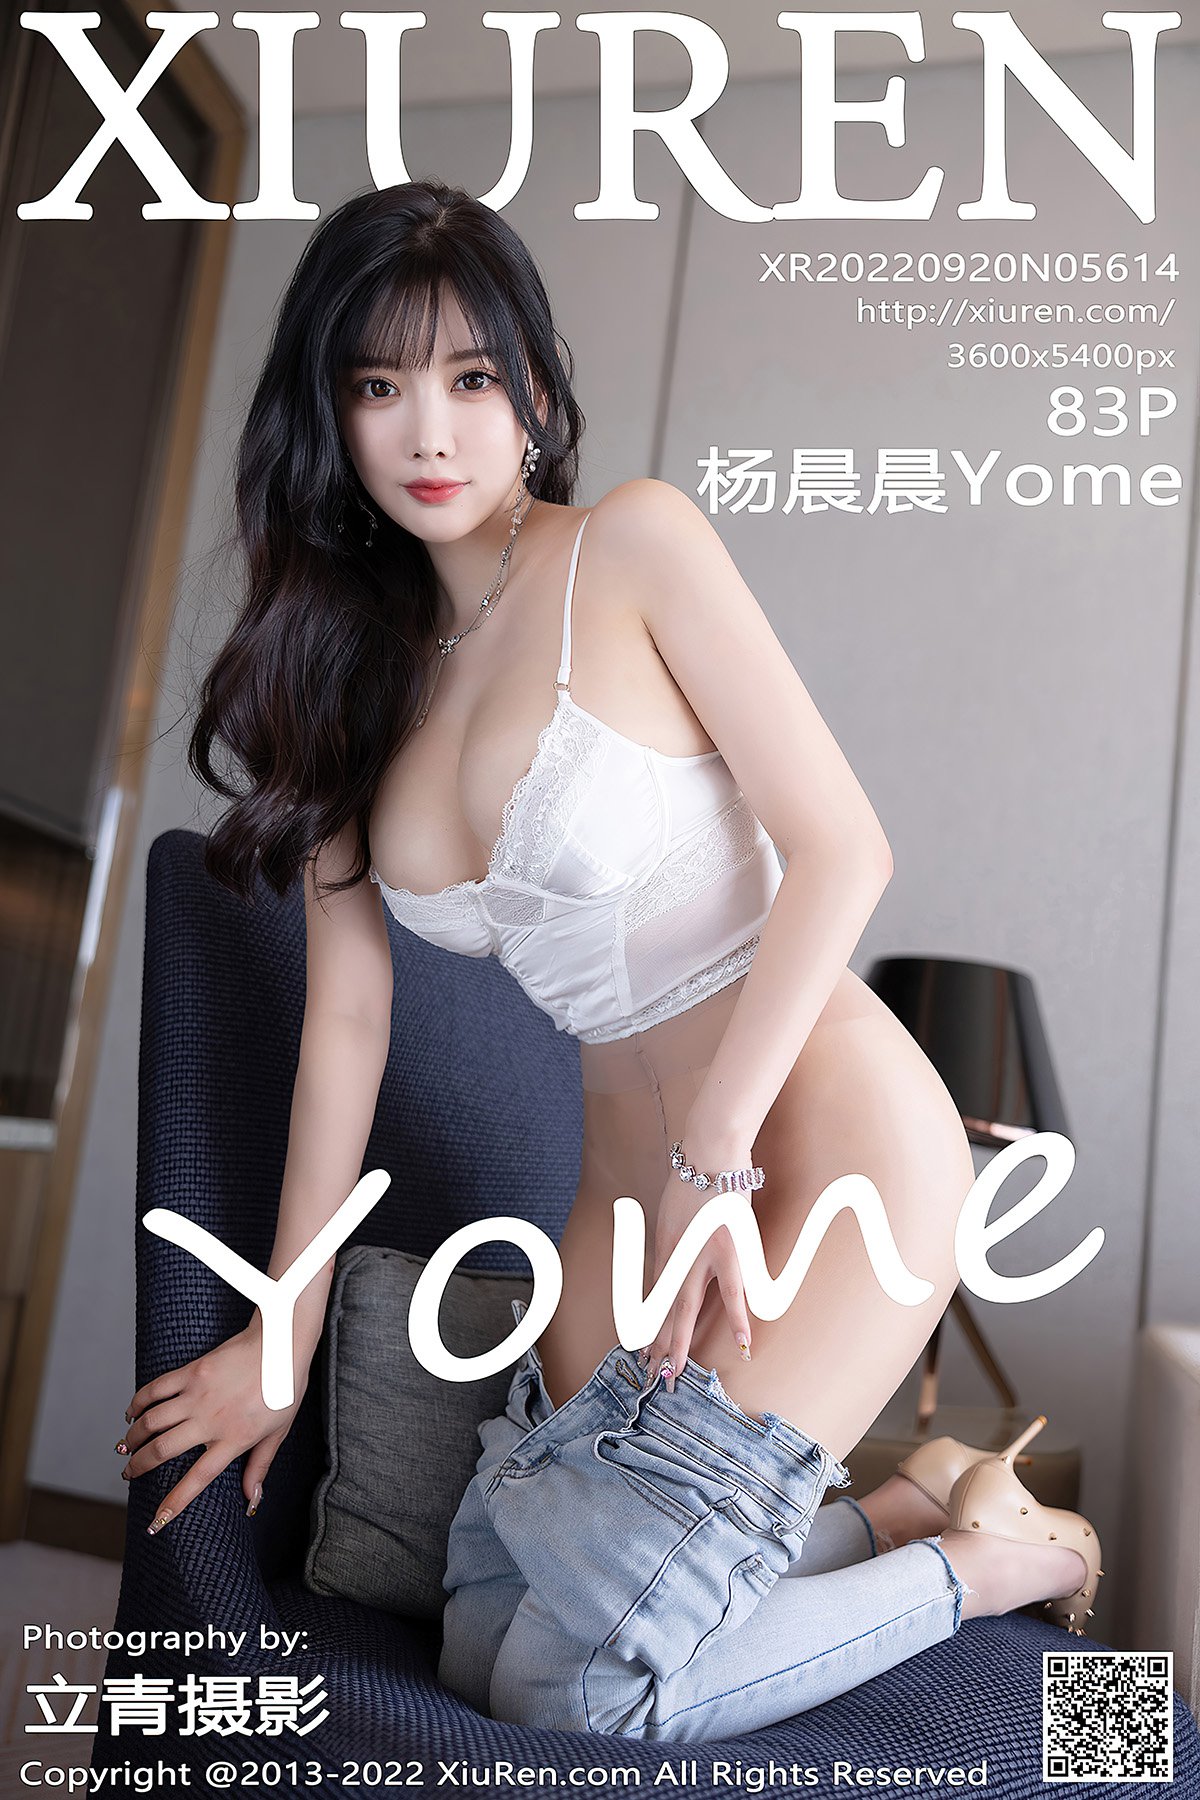 XiuRen秀人网 No.5614 Yang Chen Chen Yome